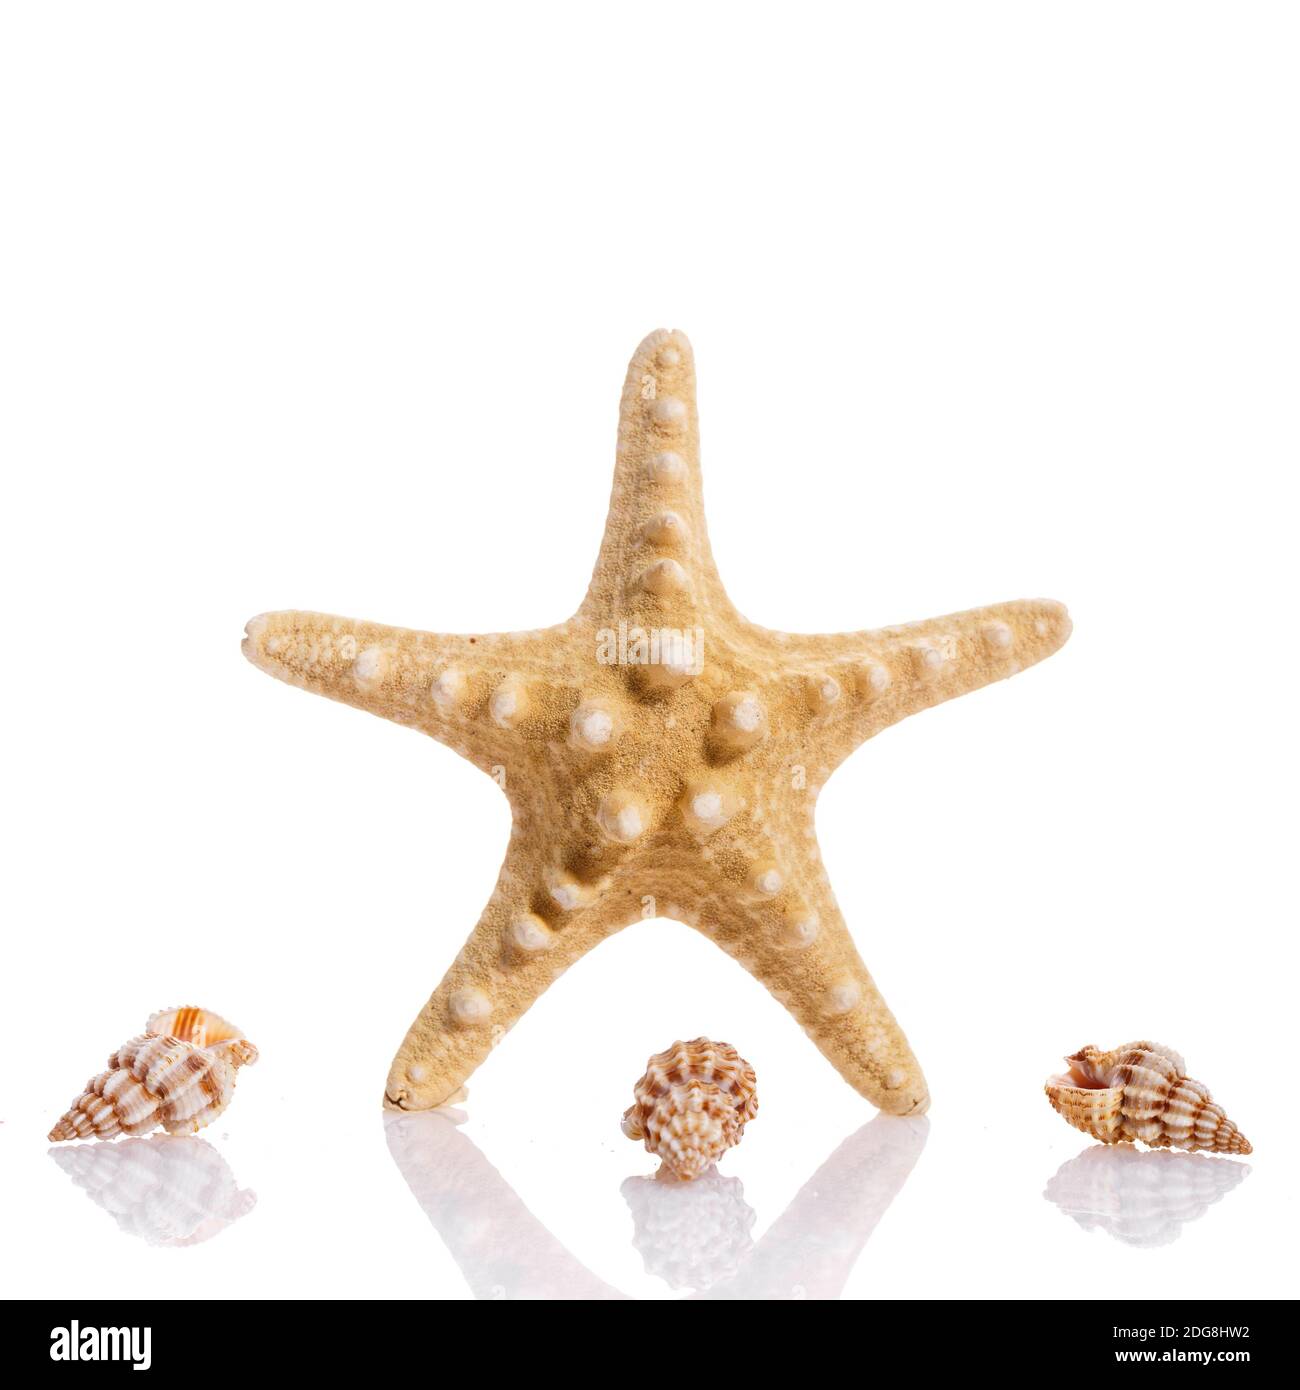 Interessante composizione di conchiglie su sfondo bianco. Starfish e piccole conchiglie a spirale. Concetto di vacanza. Foto Stock